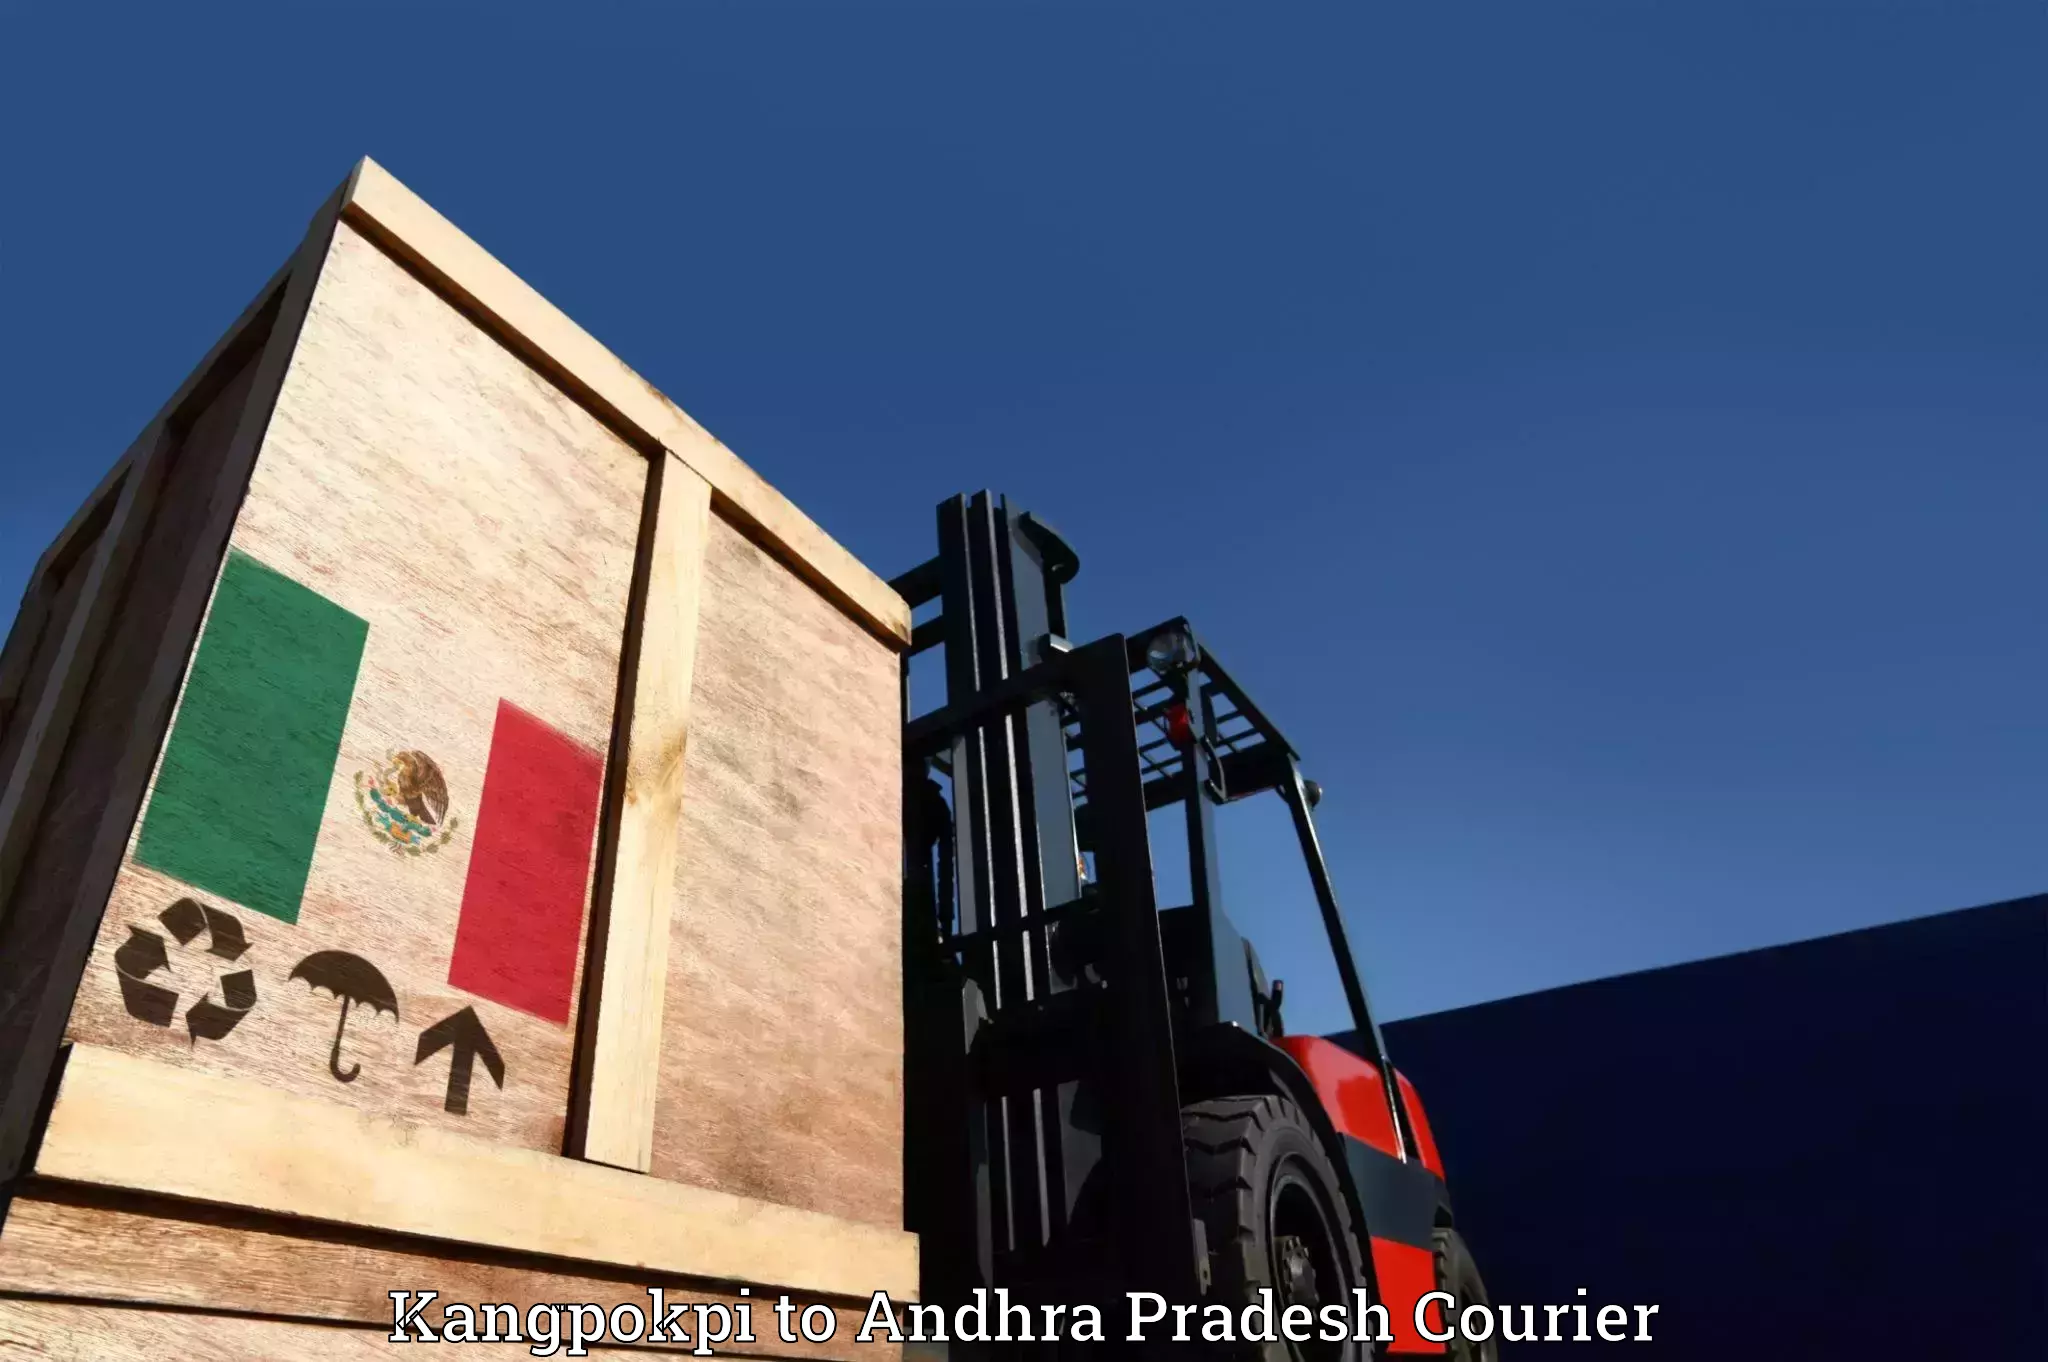 Furniture moving experts Kangpokpi to Andhra Pradesh